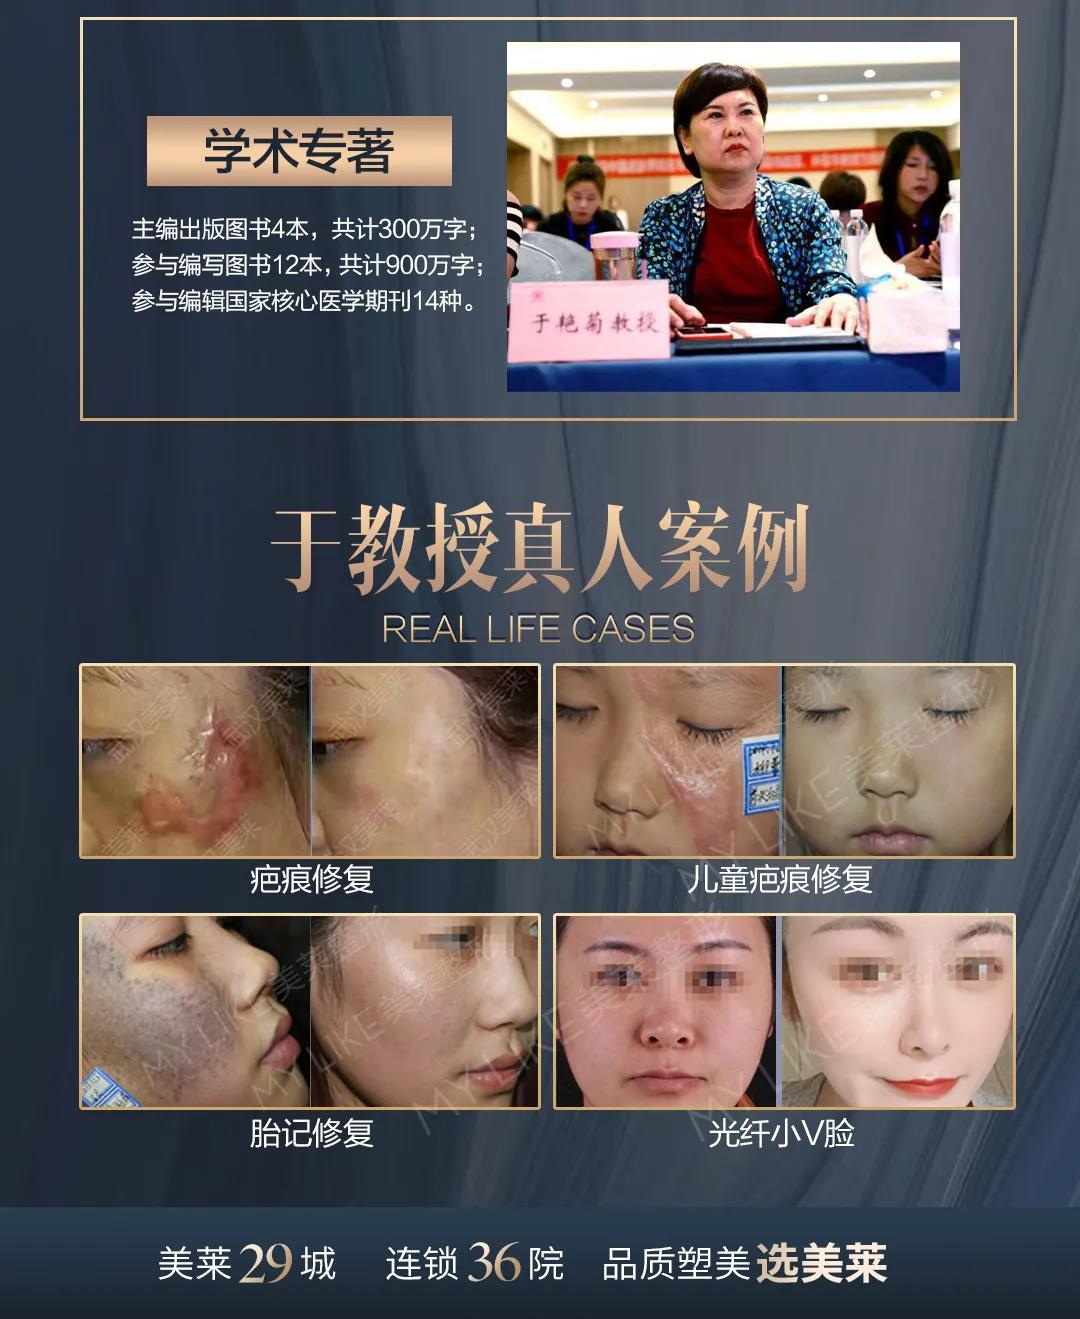 3月12日-15日，祛疤权威专家于艳菊坐诊武汉美莱